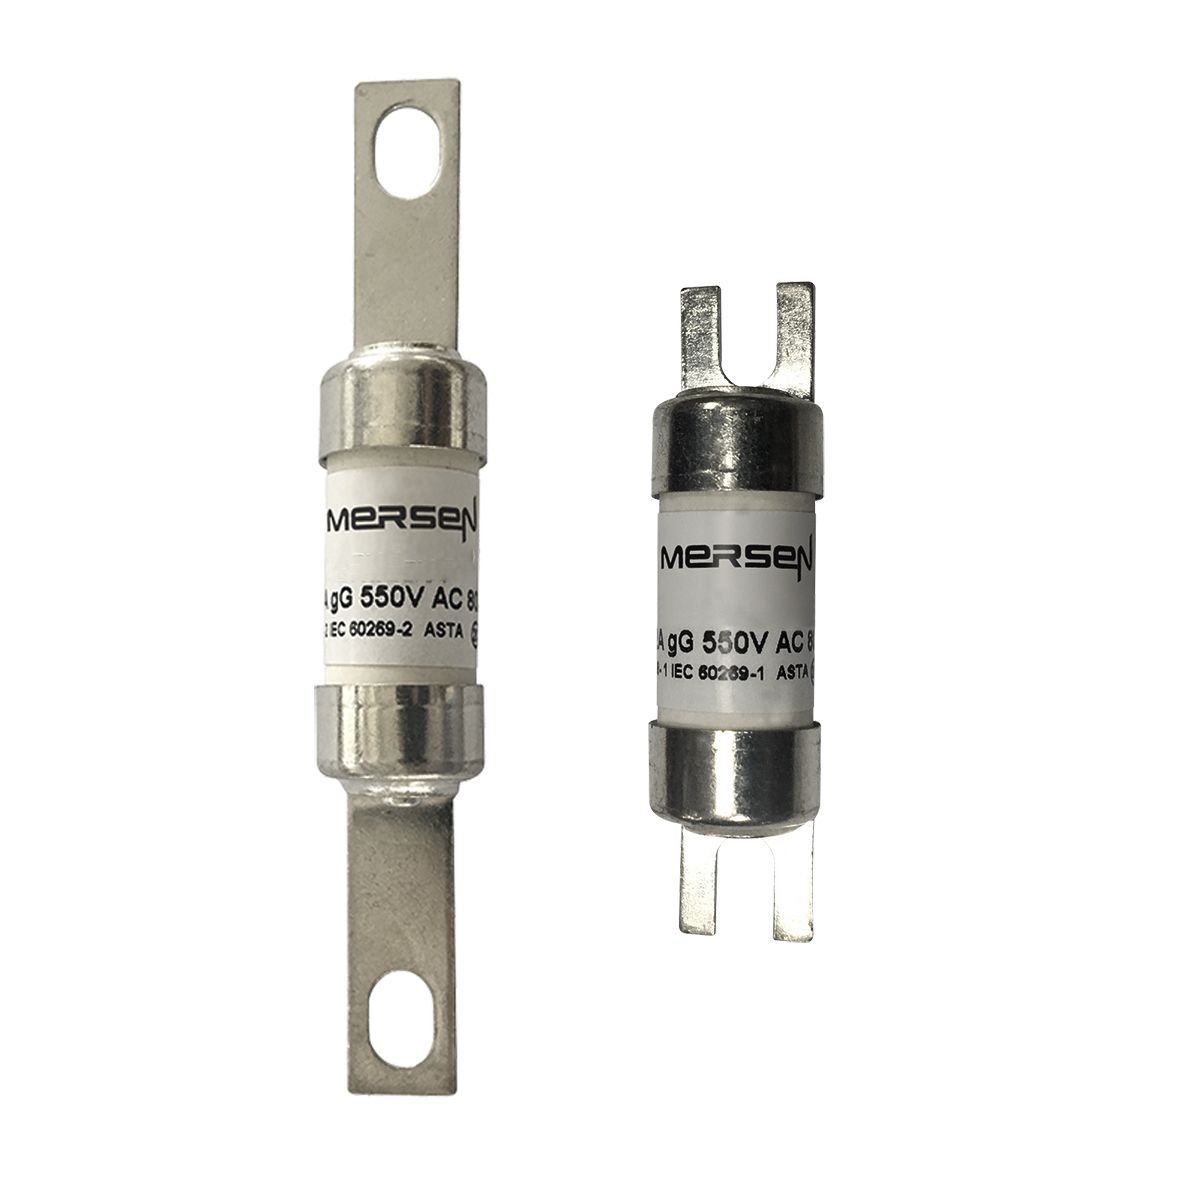 D1019248 - Offset Tag fuse-links gG BTIA 550VAC/250VDC  20M25 A